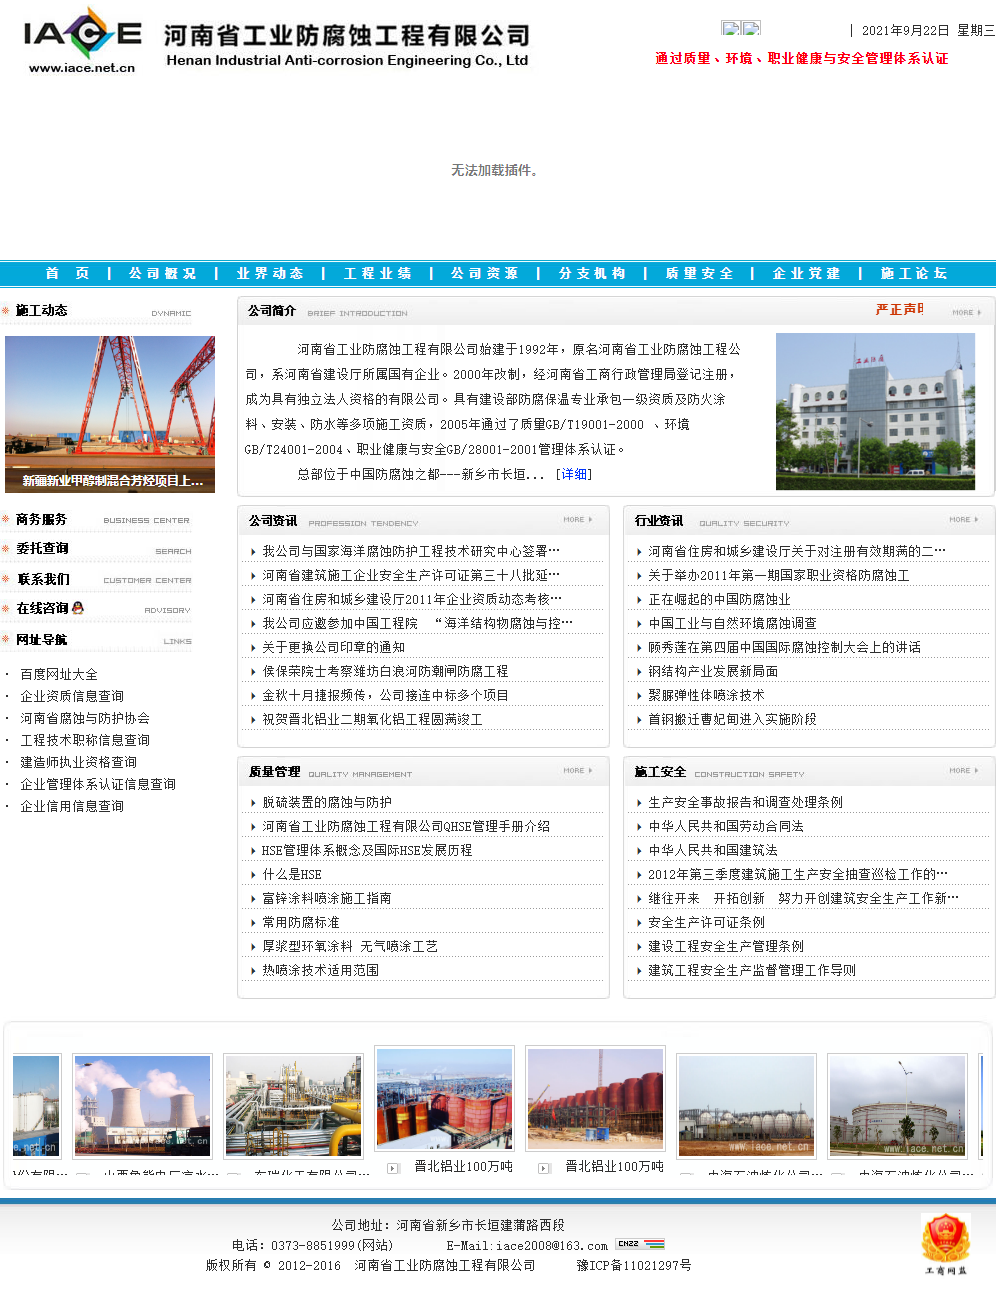 河南省工业防腐蚀工程有限公司网站案例